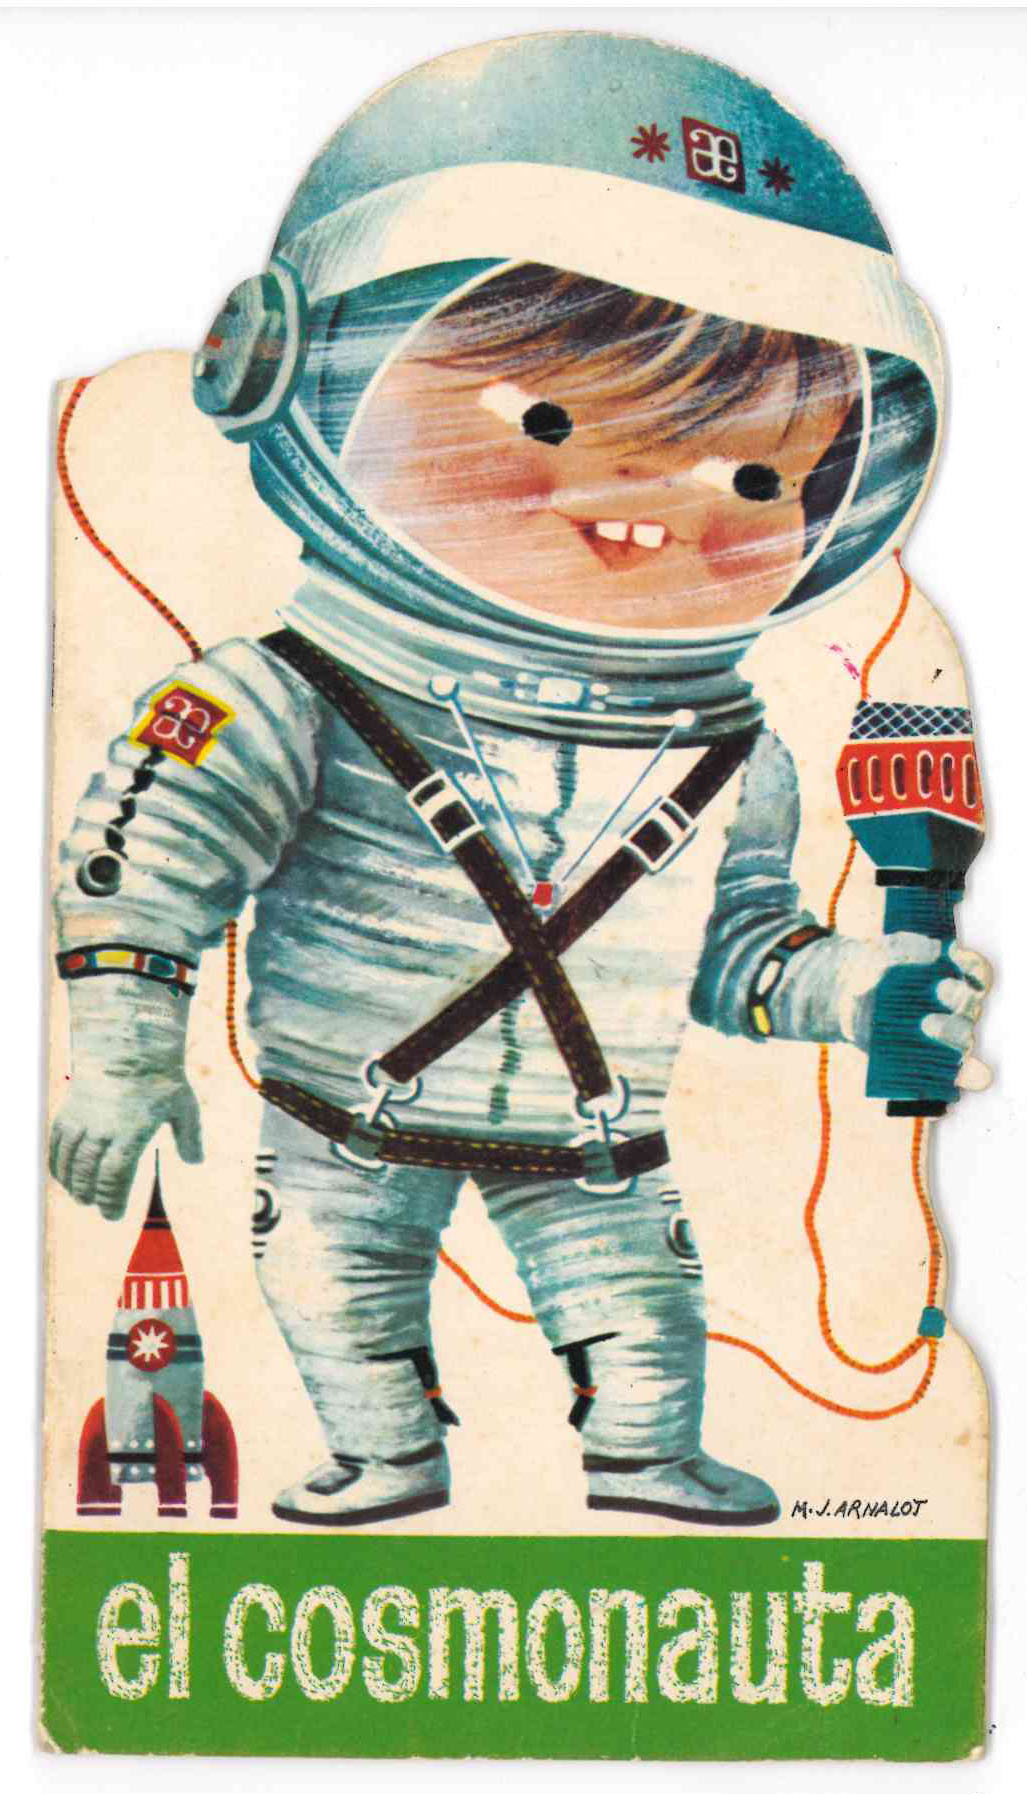 Cuento Troquelado El Cosmonauta. Arnalot 1965